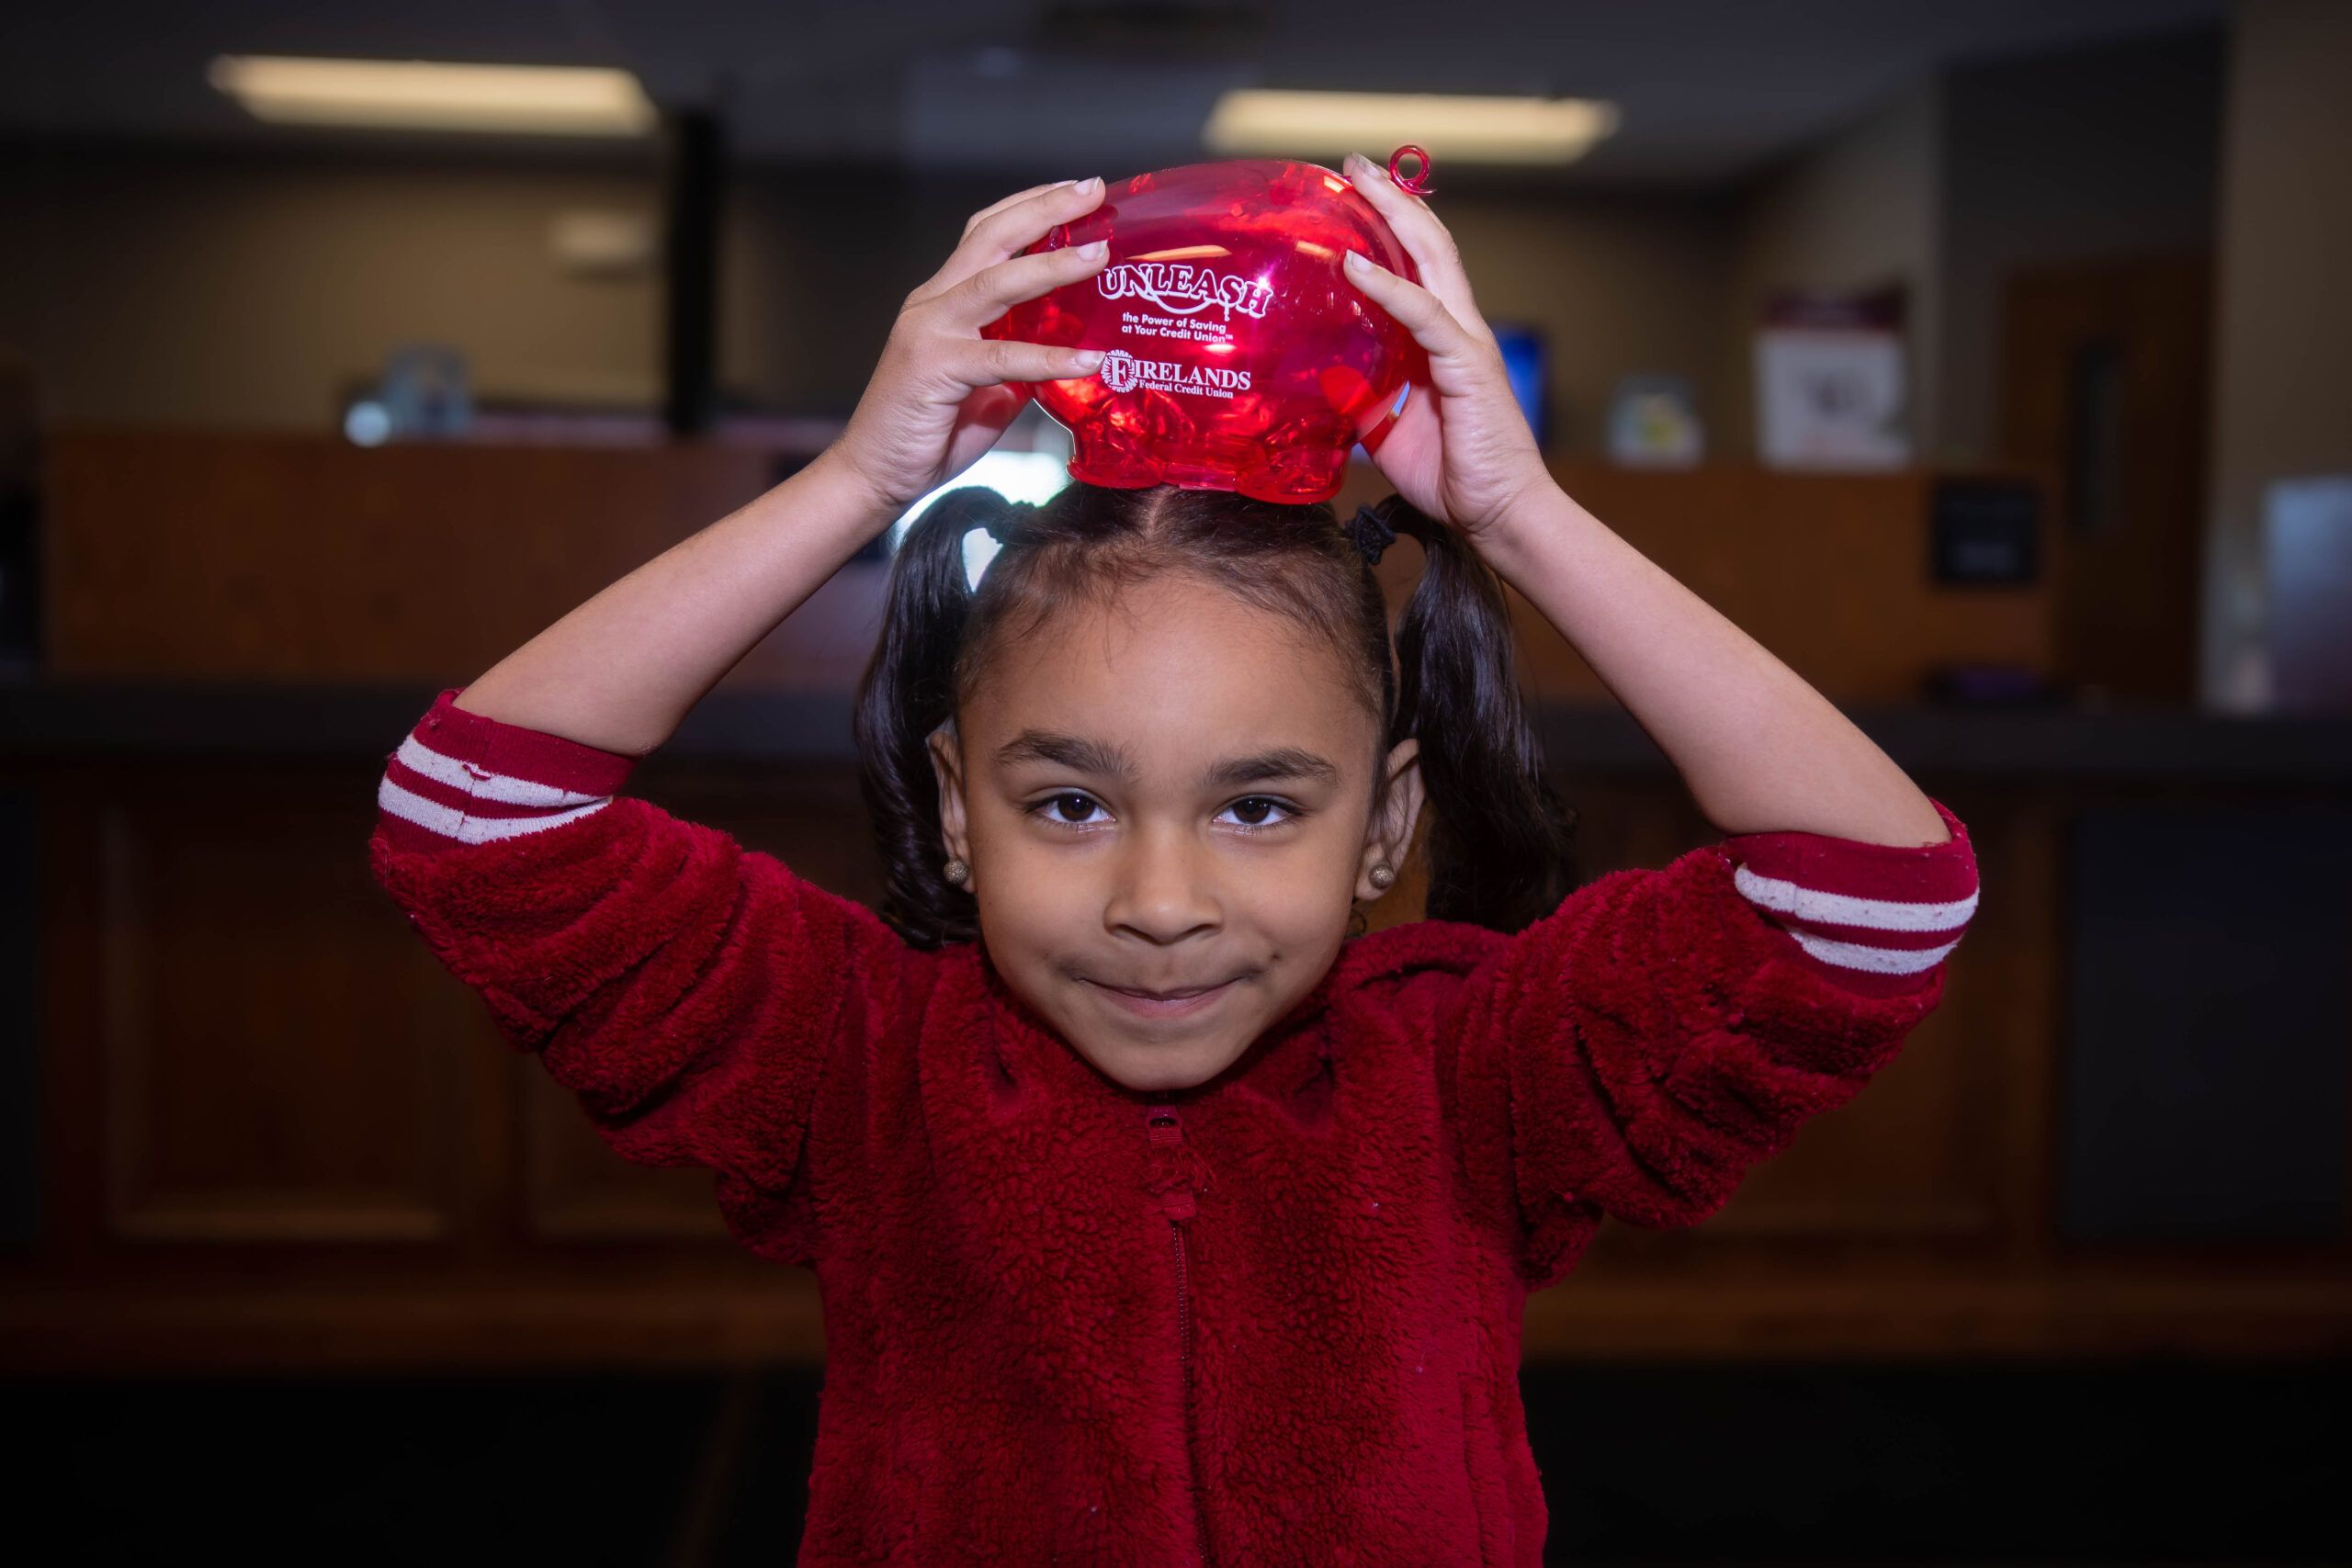 Little girl holding a Firelands piggy bank on her head